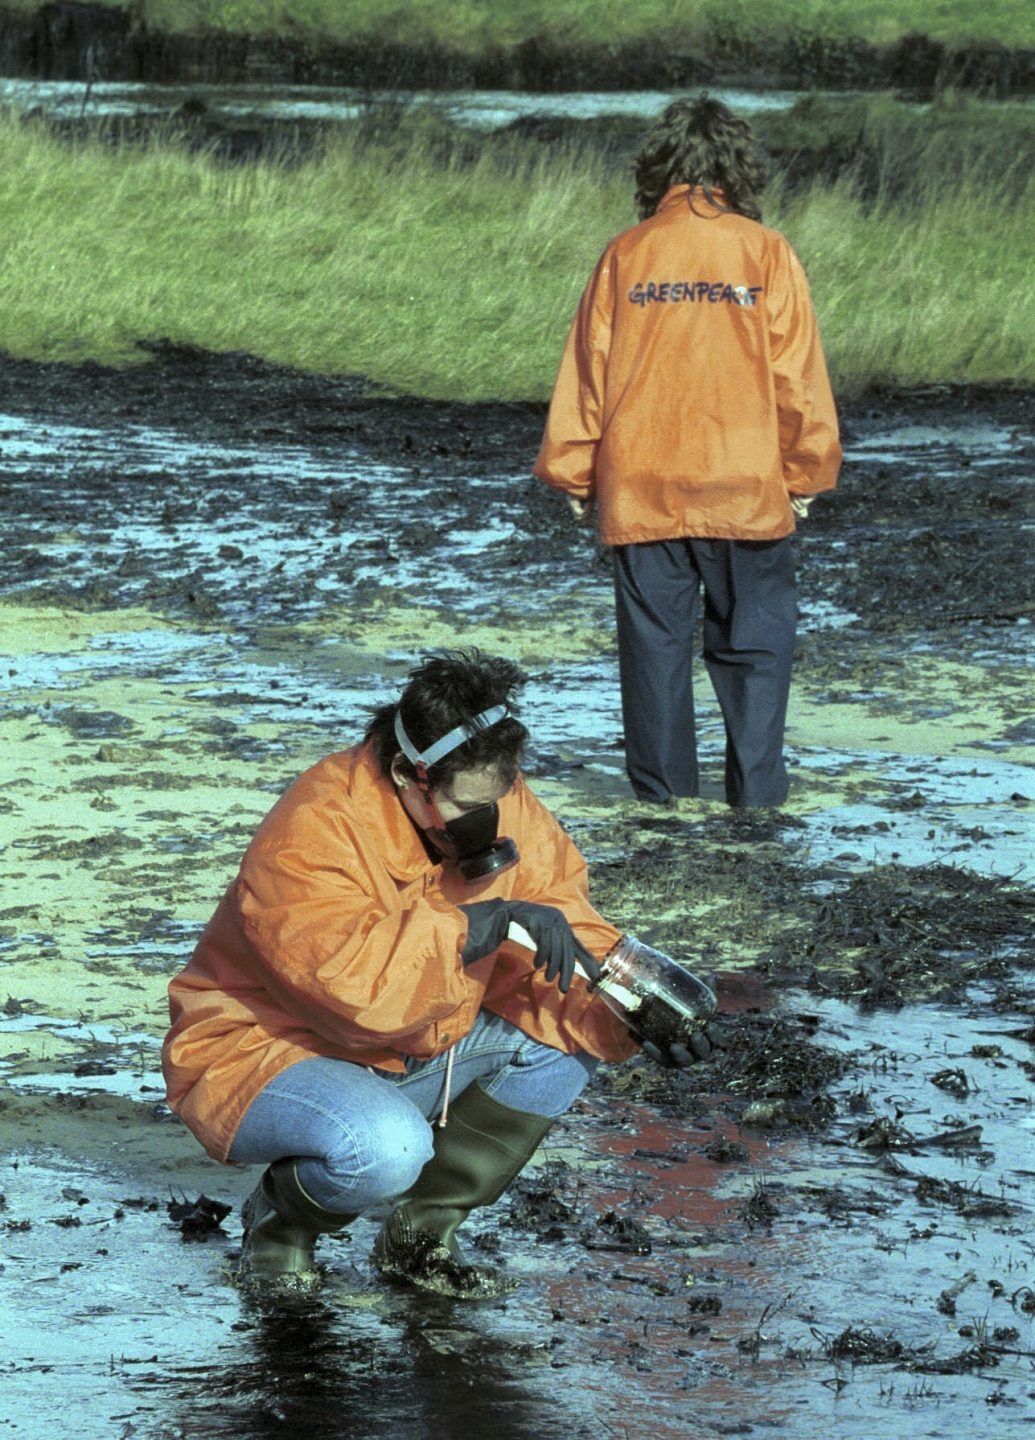 Voluntarios de Greenpeace durante la crisis del Prestige.